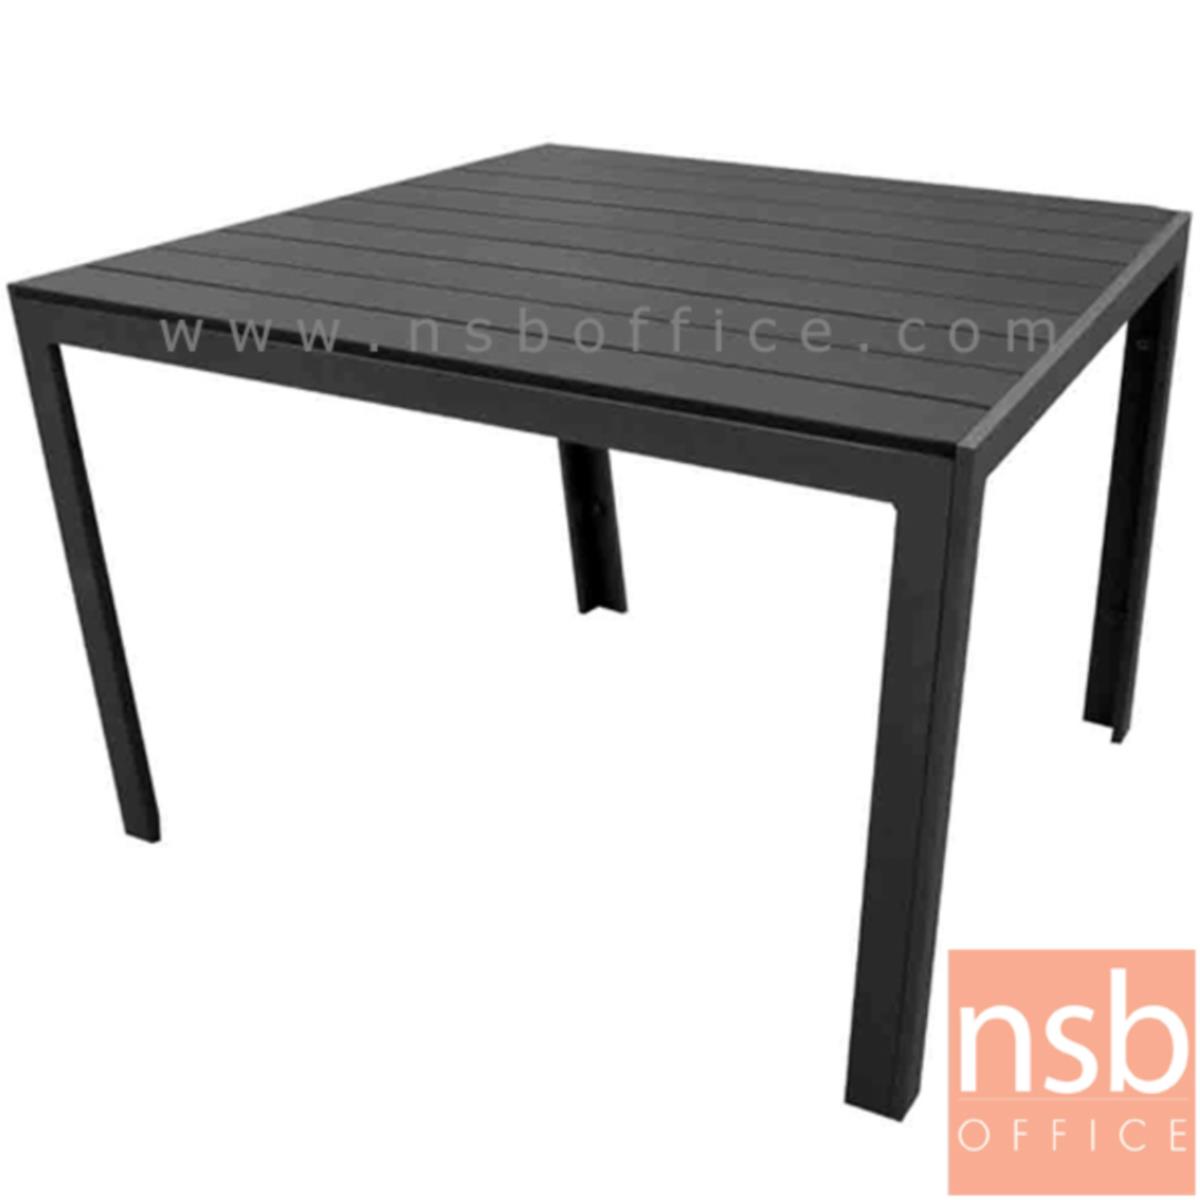 A14A061:โต๊ะเฟรมอลูมิเนียมหน้าไม้โพลี รุ่น Warburtons (วอร์เบอตันส์) ขนาด 90W cm.  โครงขาสีดำเกร็ดเงิน